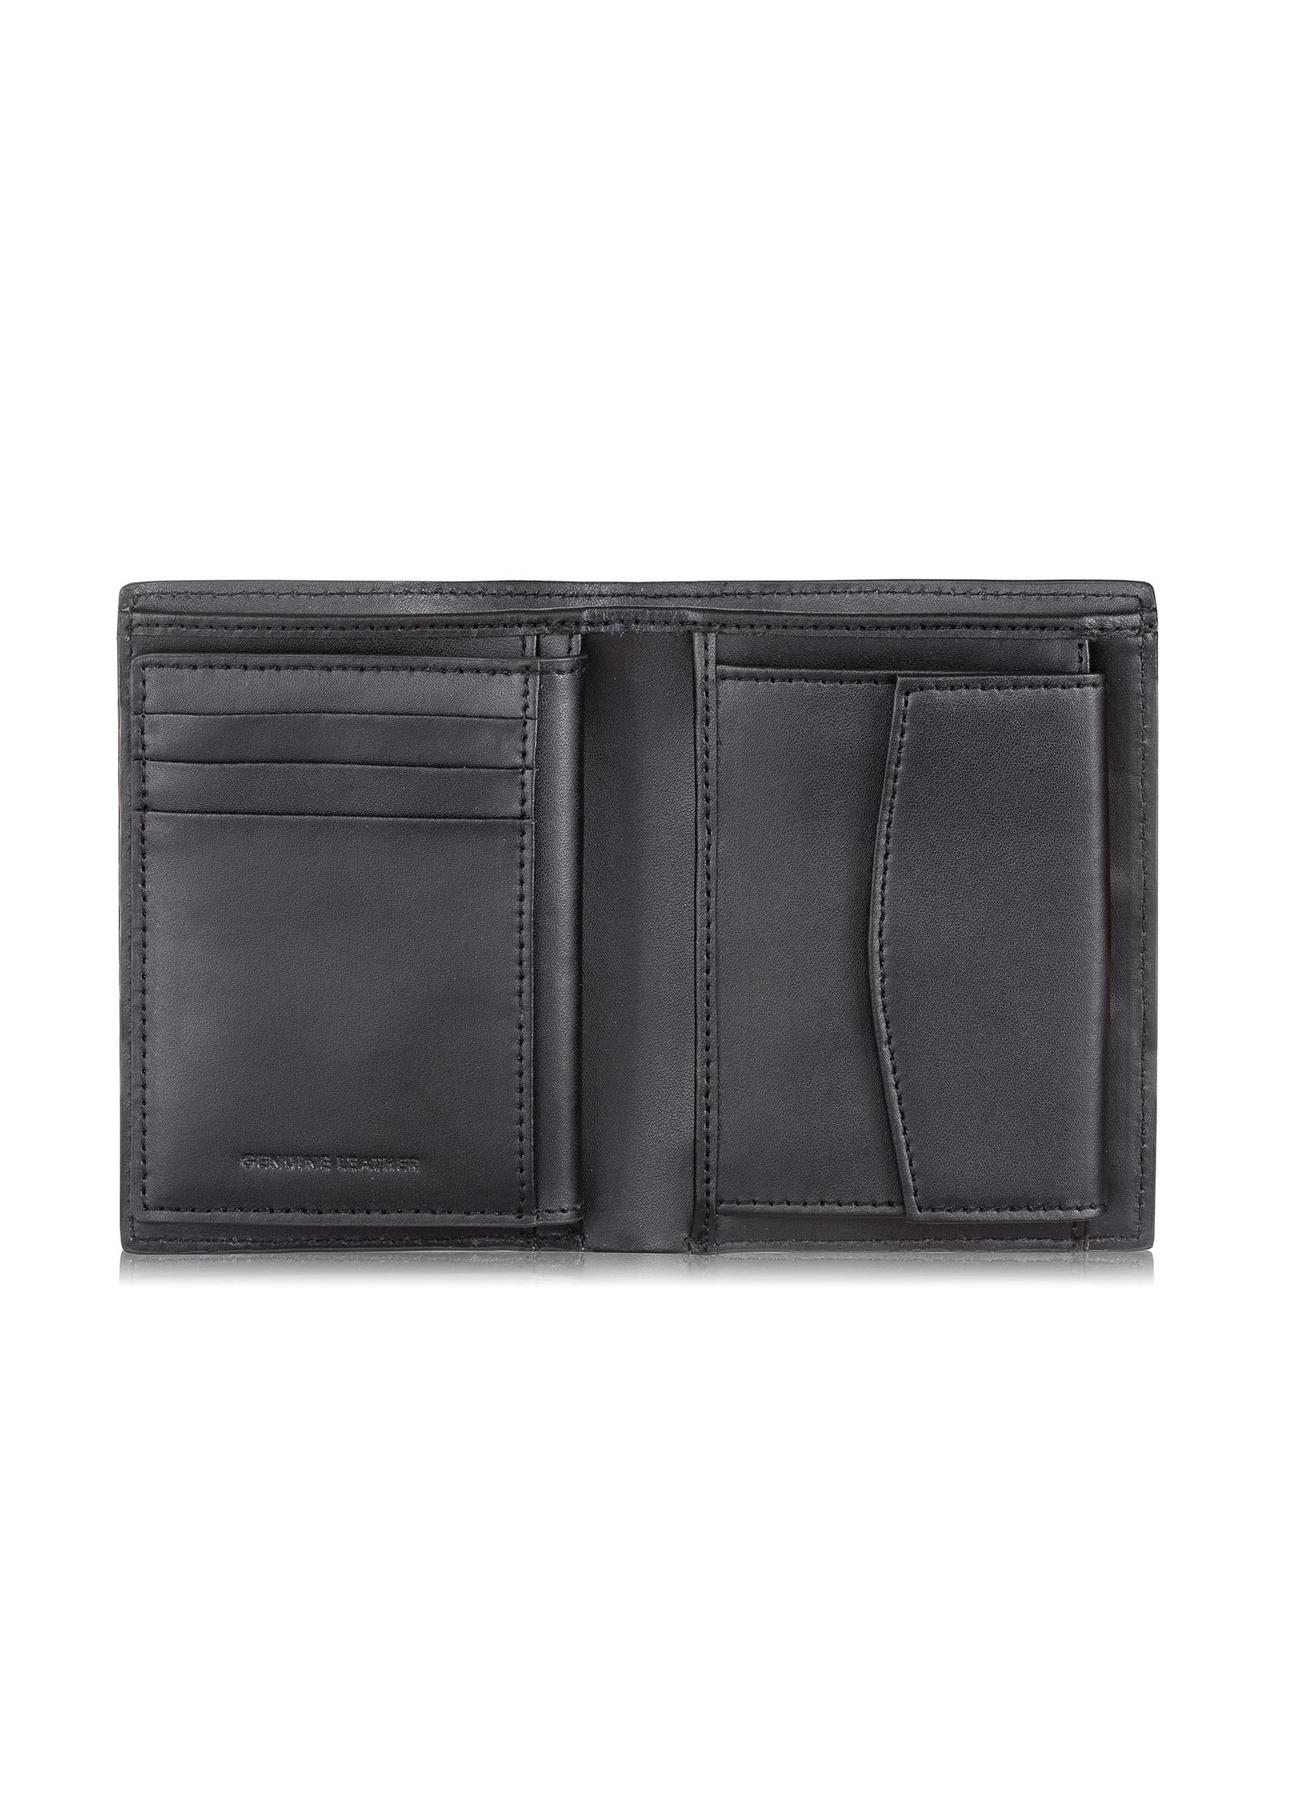 Skórzany portfel męski ze wzorem moro PORMS-0527-99(W23)